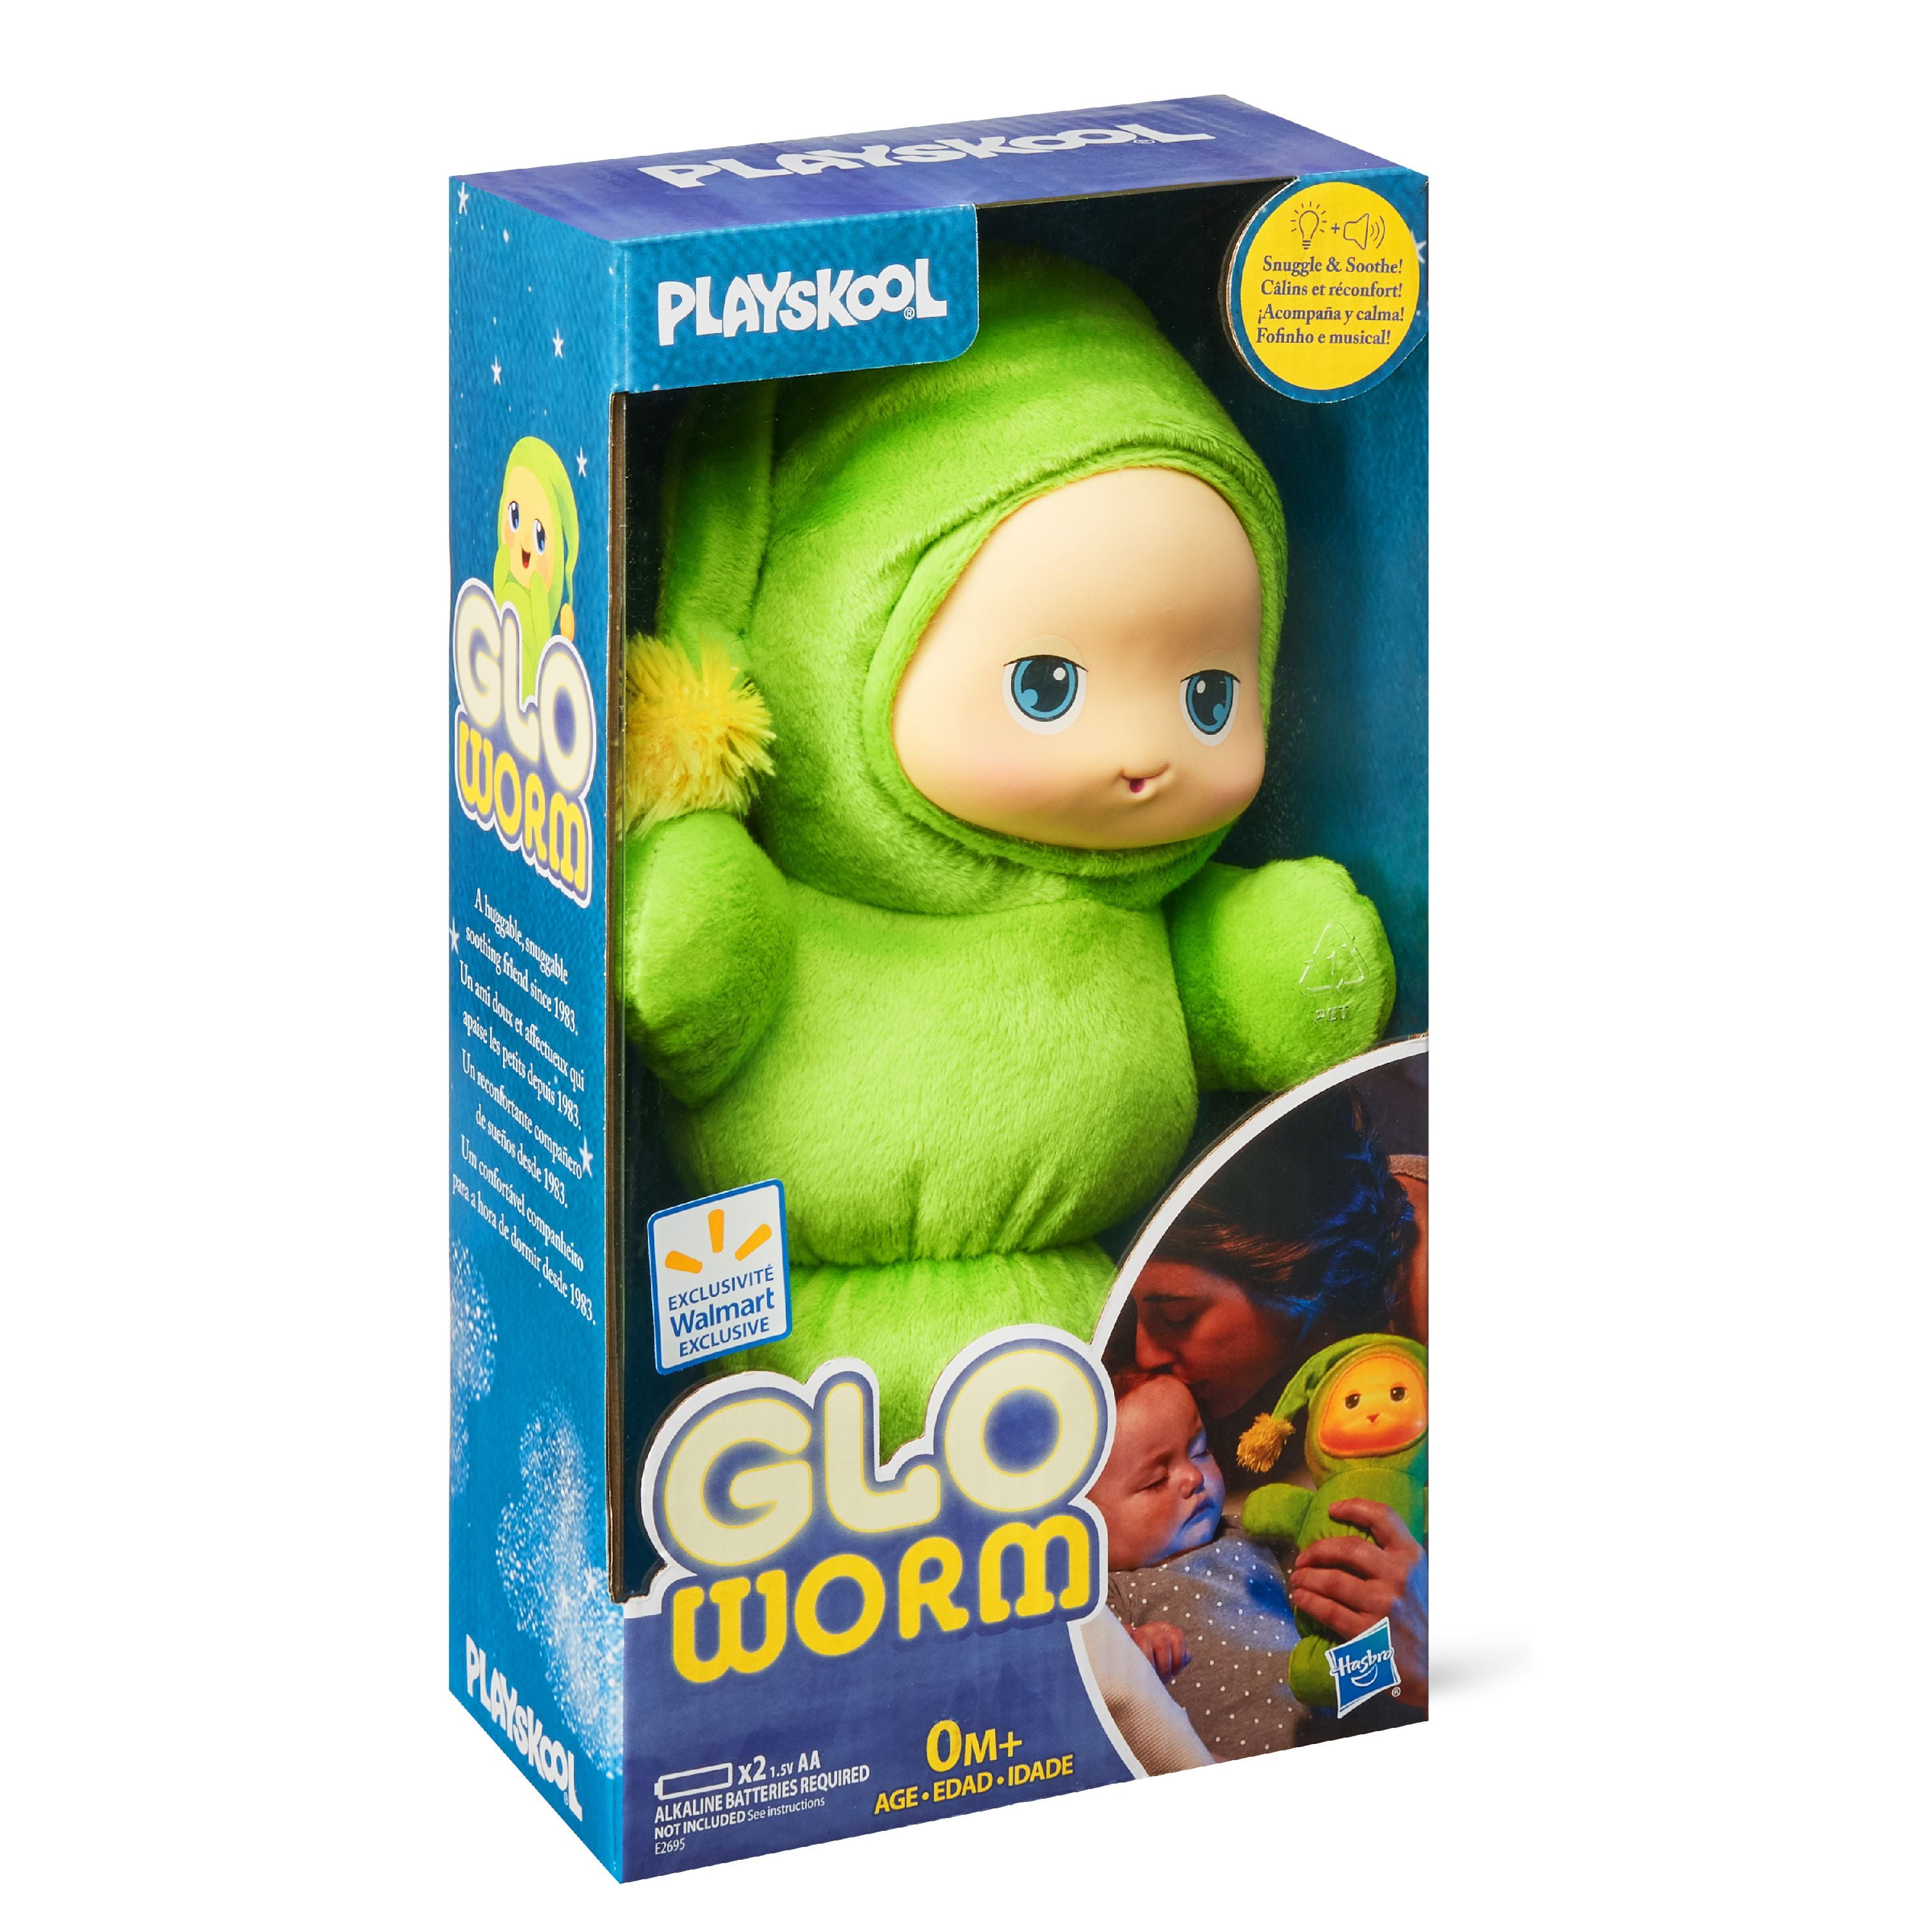 Playskool Classic Glo Worm Plush Toy 